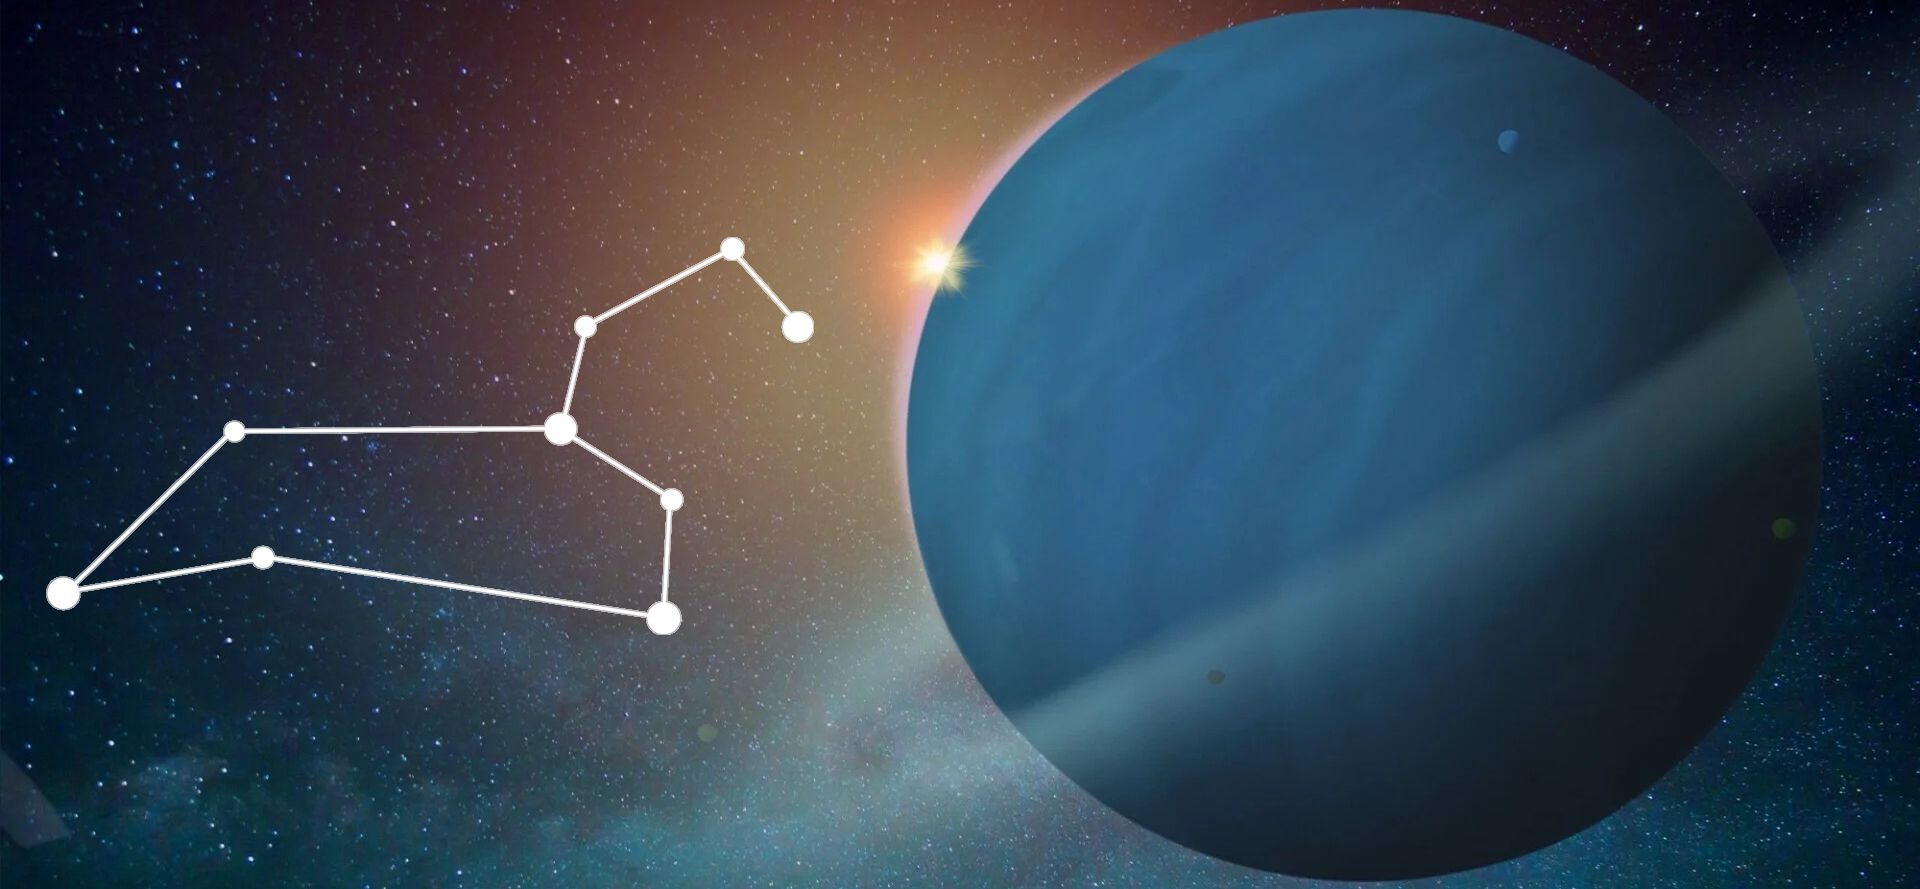 Uranus and Leo constellation.